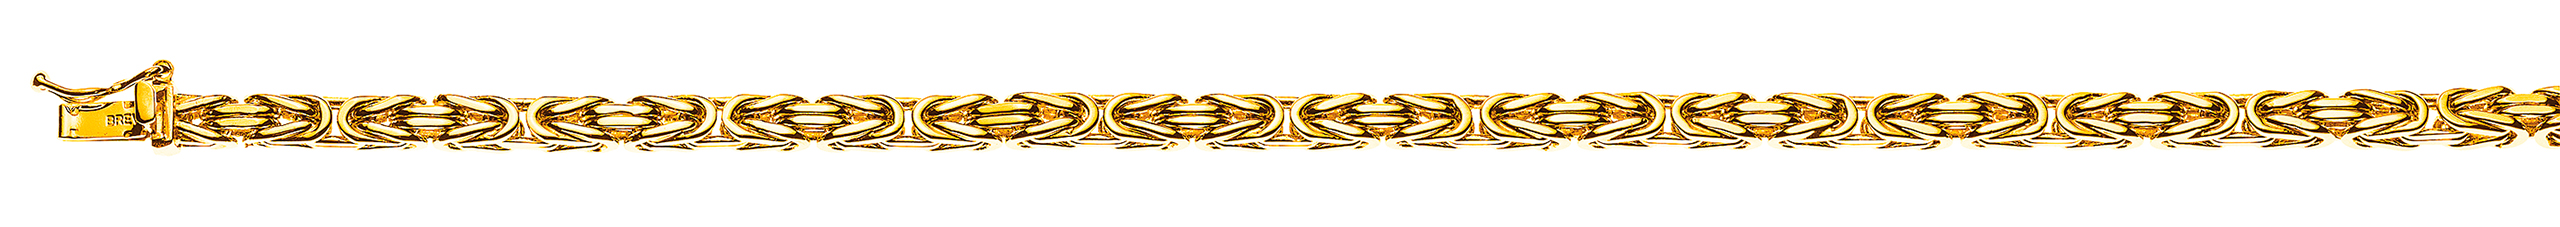 Collier Königskette klassisch Gelbgold 750 ca. 3.5mm 55 cm